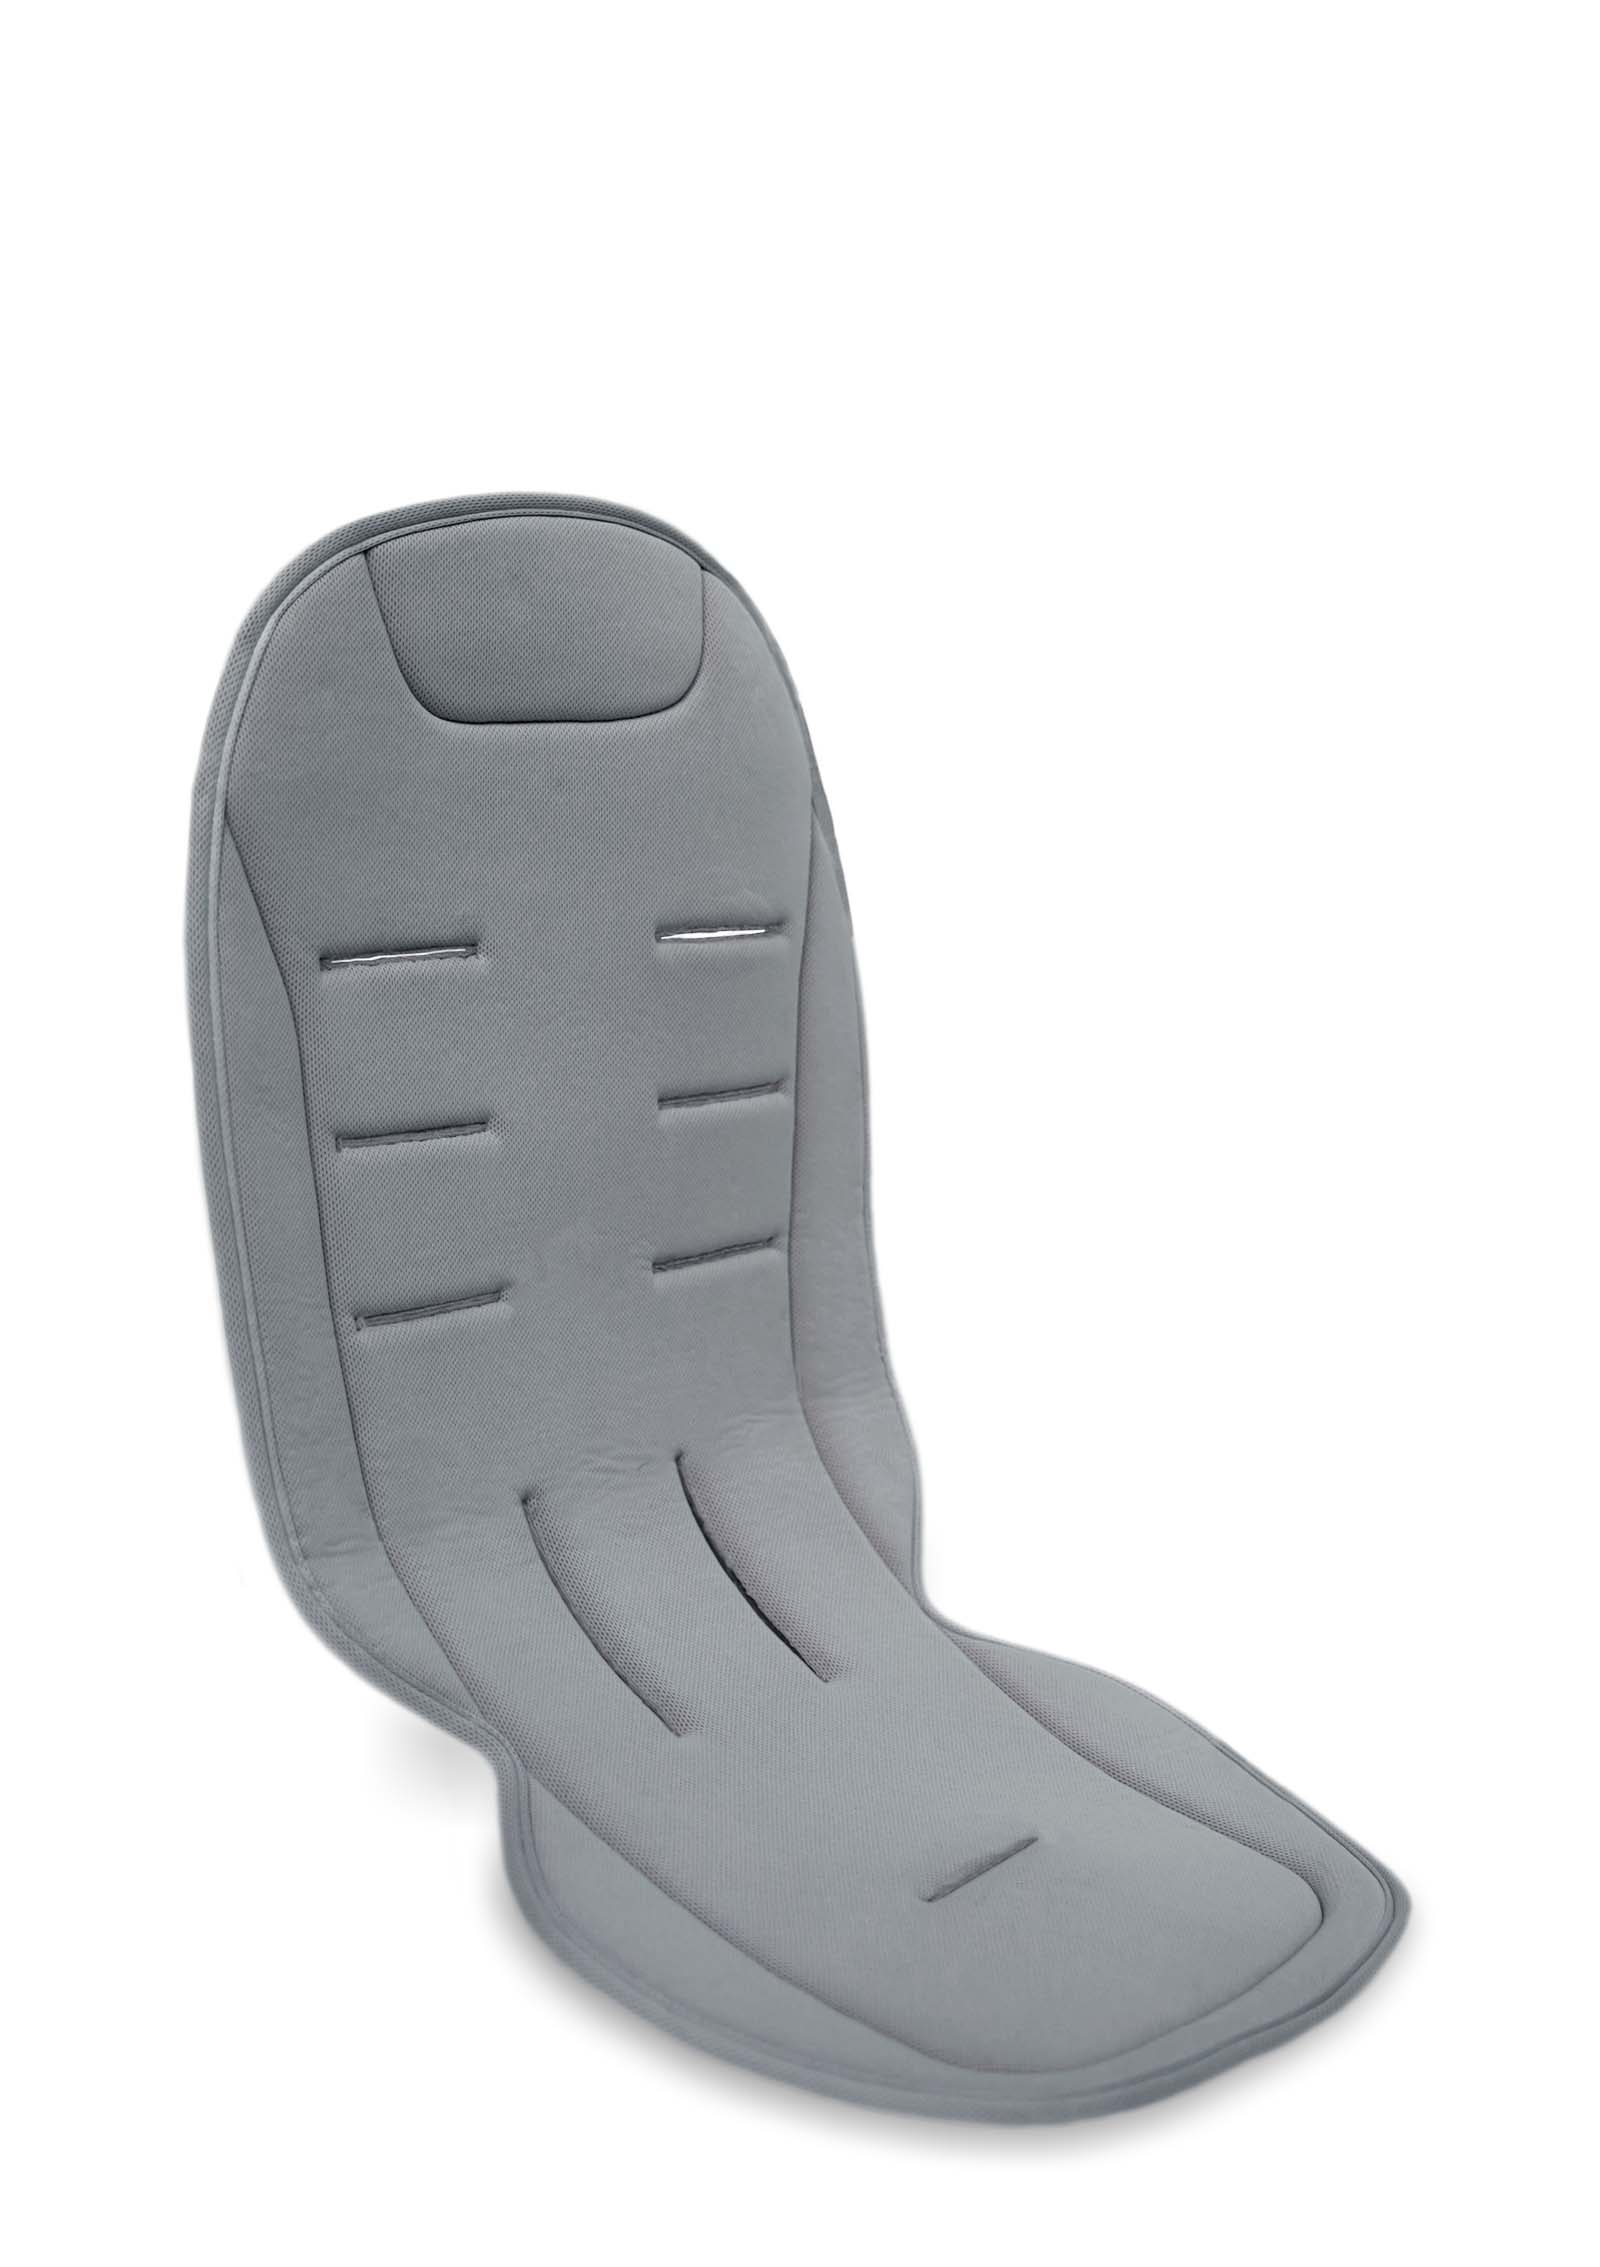 Komfort Sitzauflage Grau